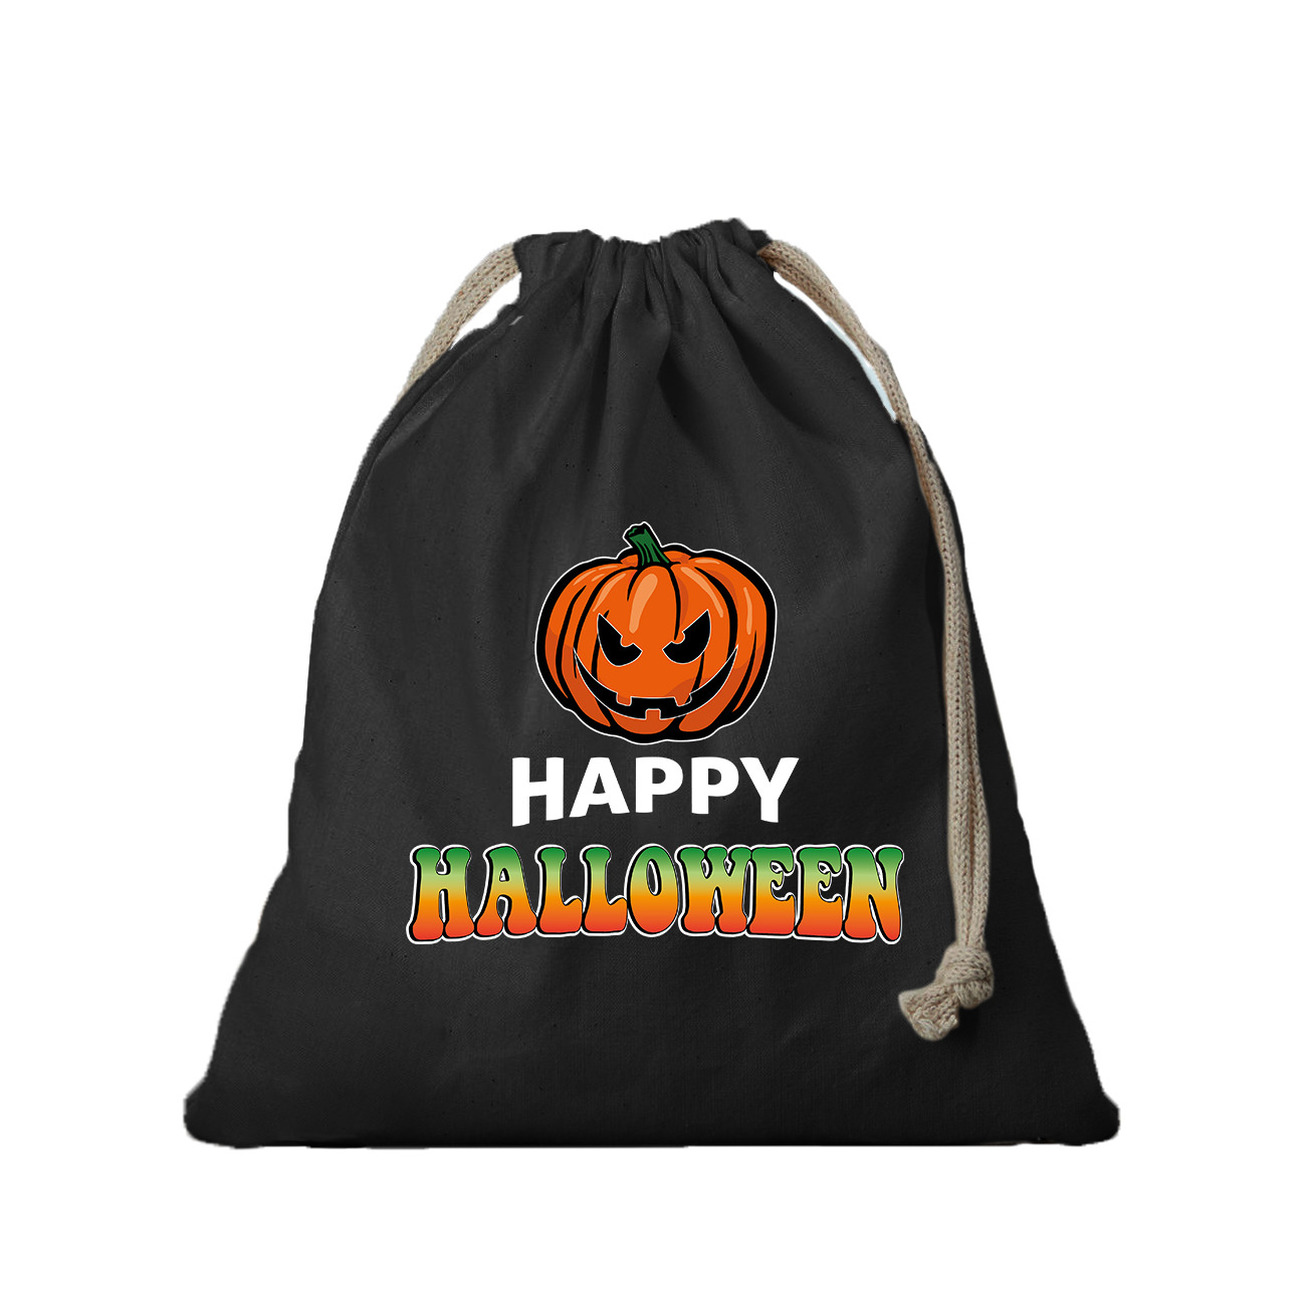 1x Katoenen happy halloween snoep tasje met pompoen zwart 25 x 30 cm